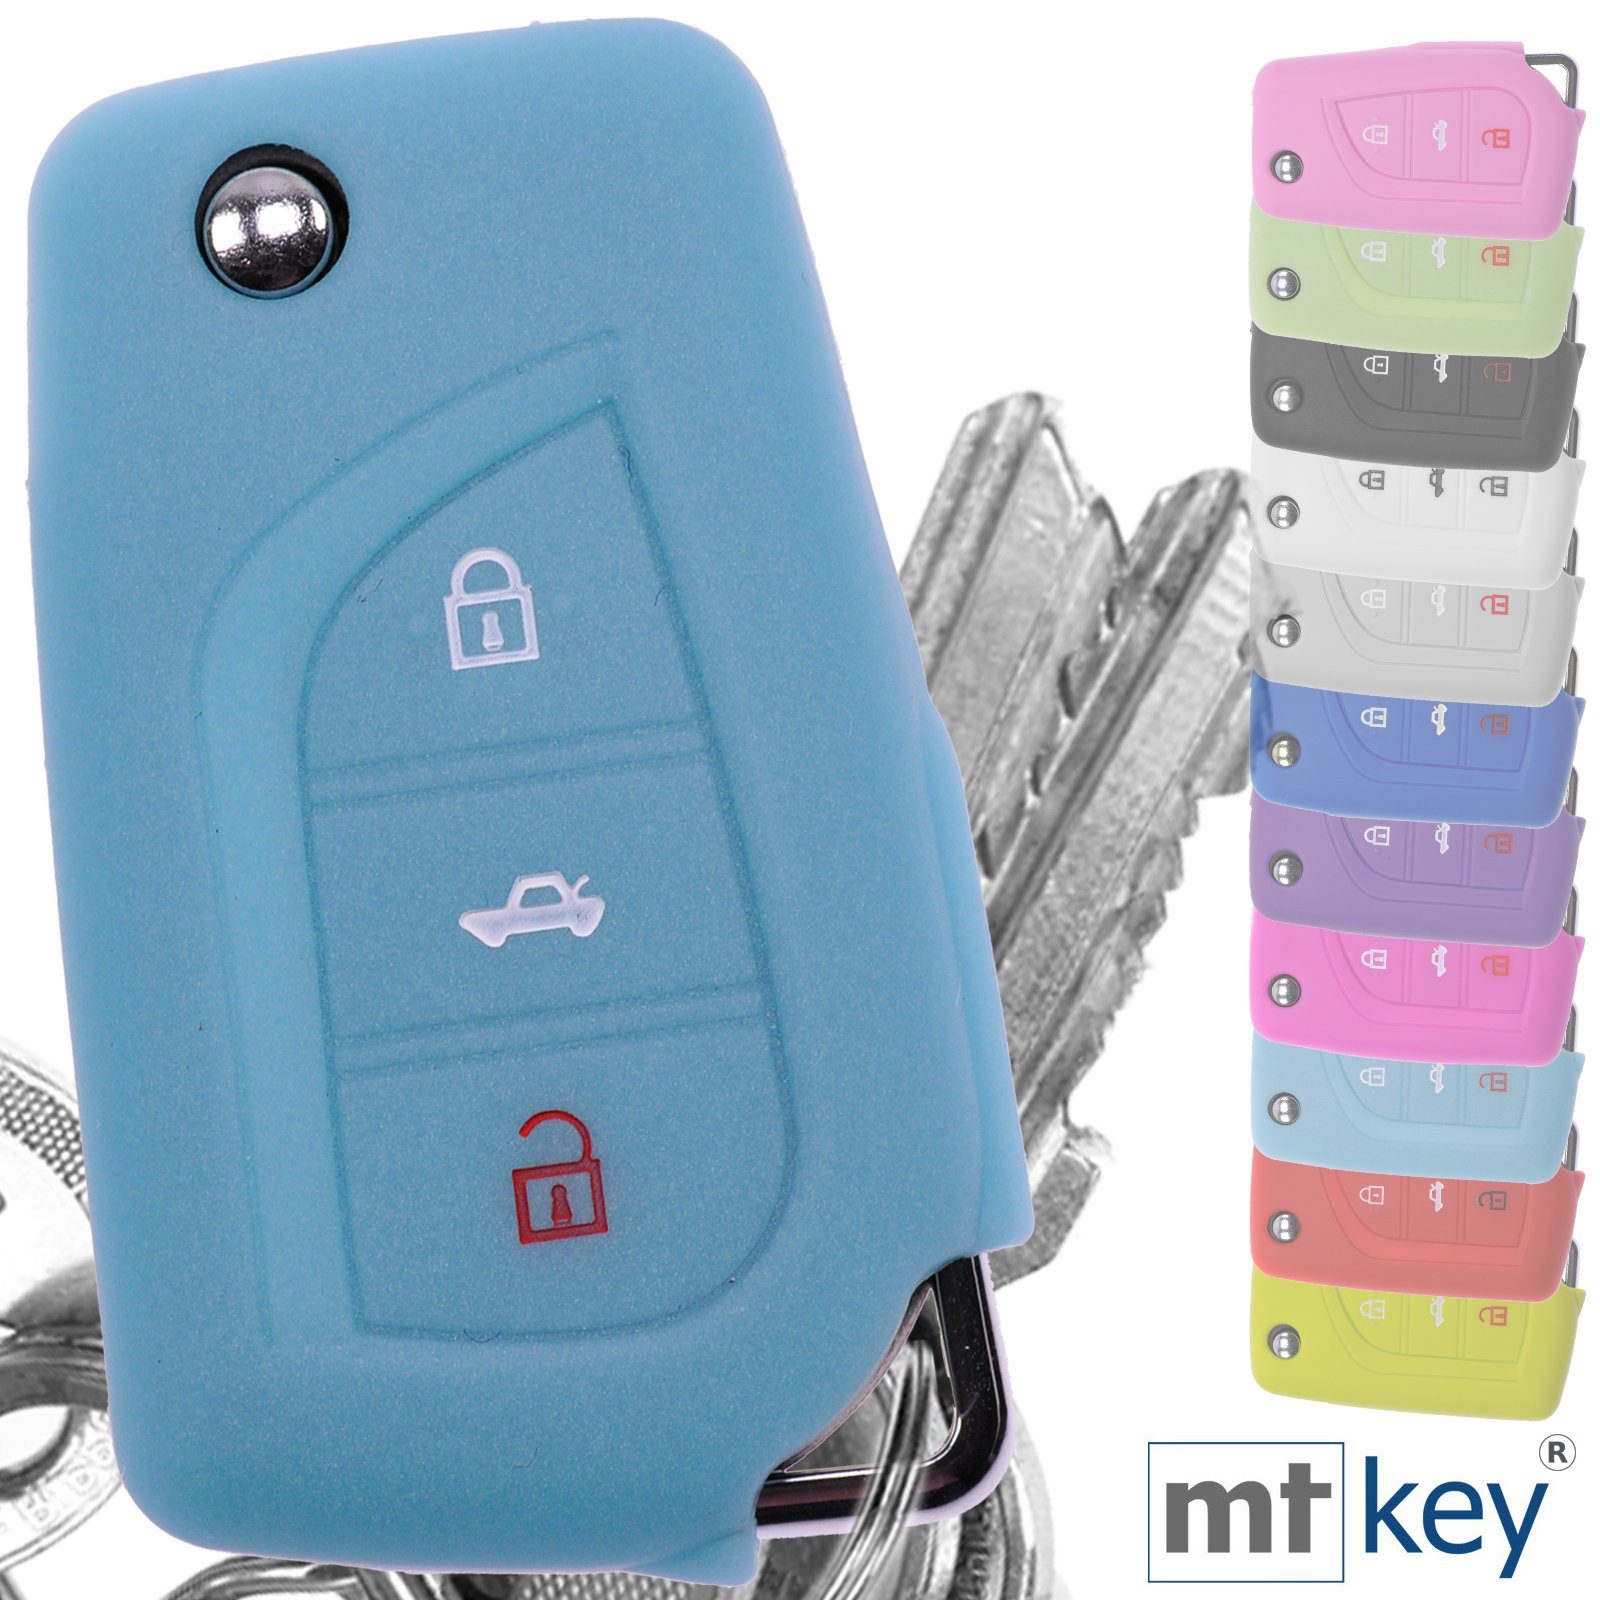 Schutzhülle Klappschlüssel Silikon Schlüsseltasche 3 Autoschlüssel Softcase Toyota AURIS fluoreszierend für mt-key Corolla Avensis Tasten Blau,